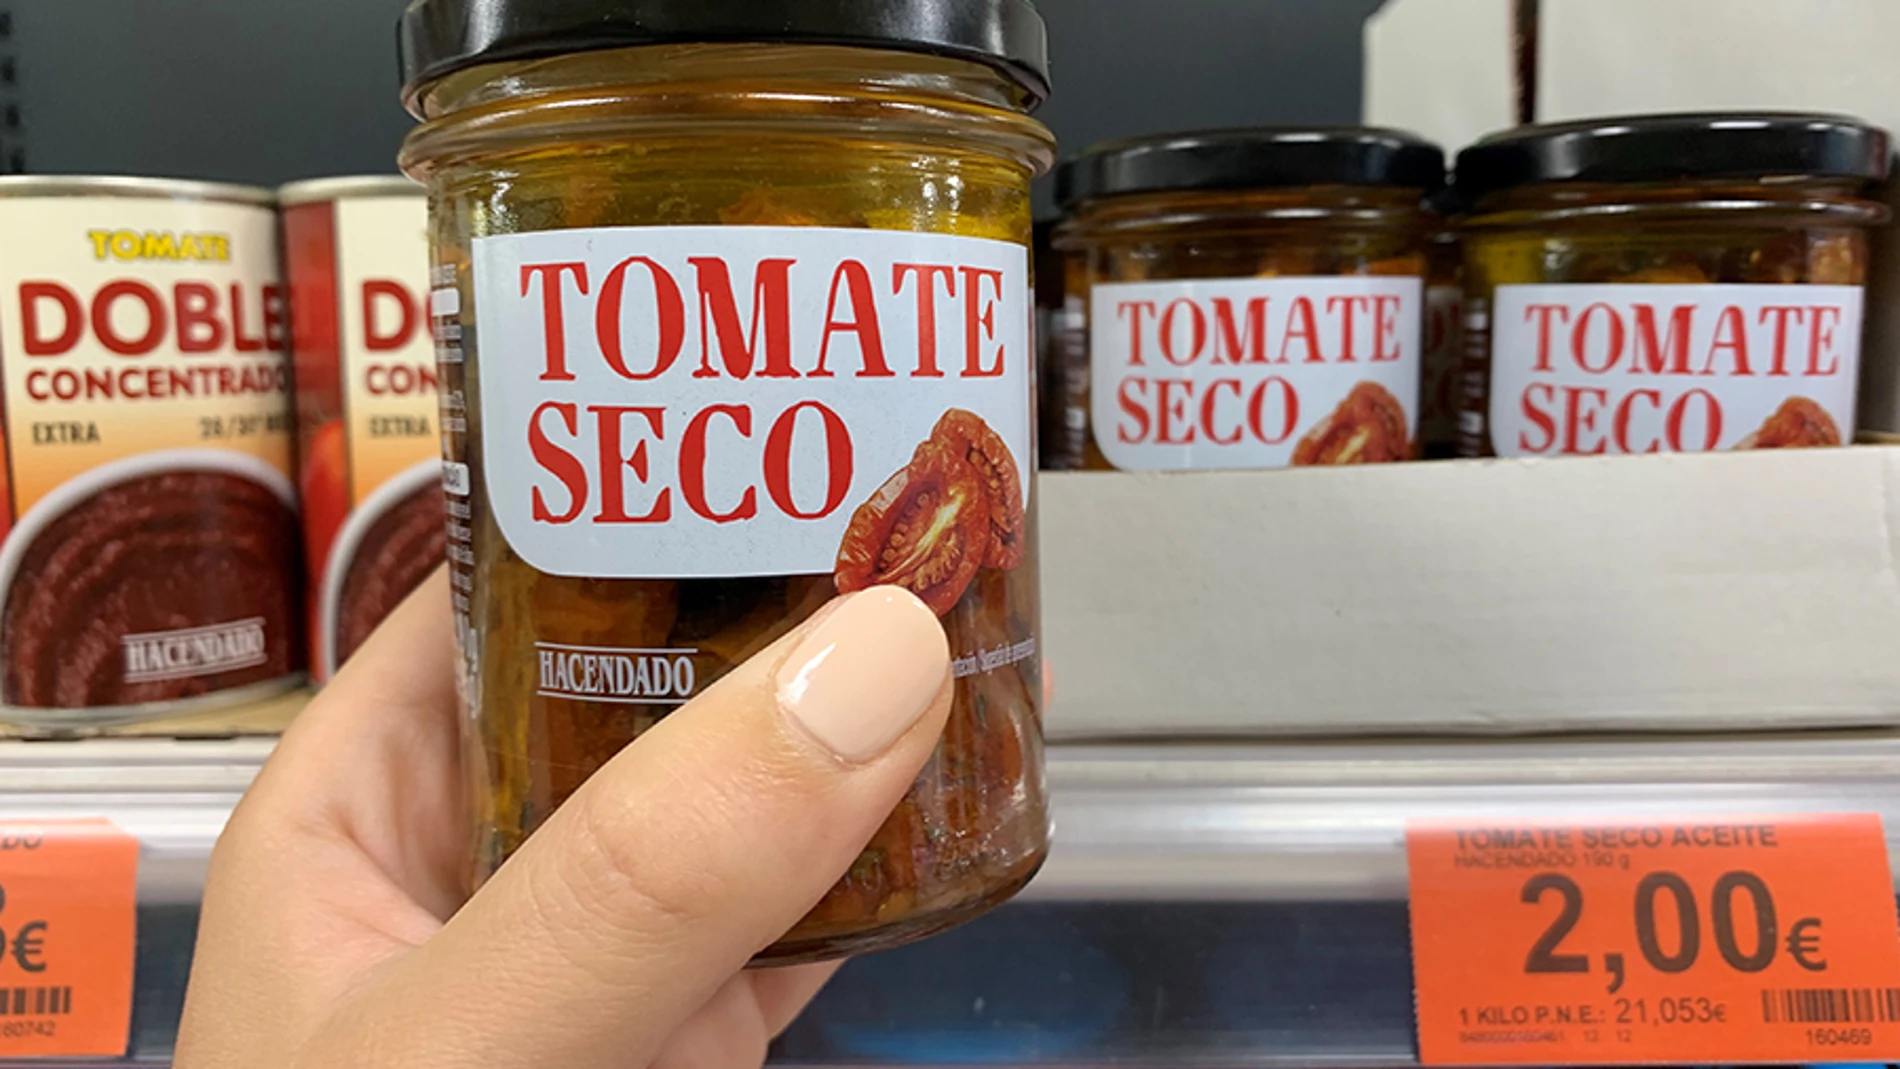 comprar tomate seco al mejor precio online en españa envio 24 horas